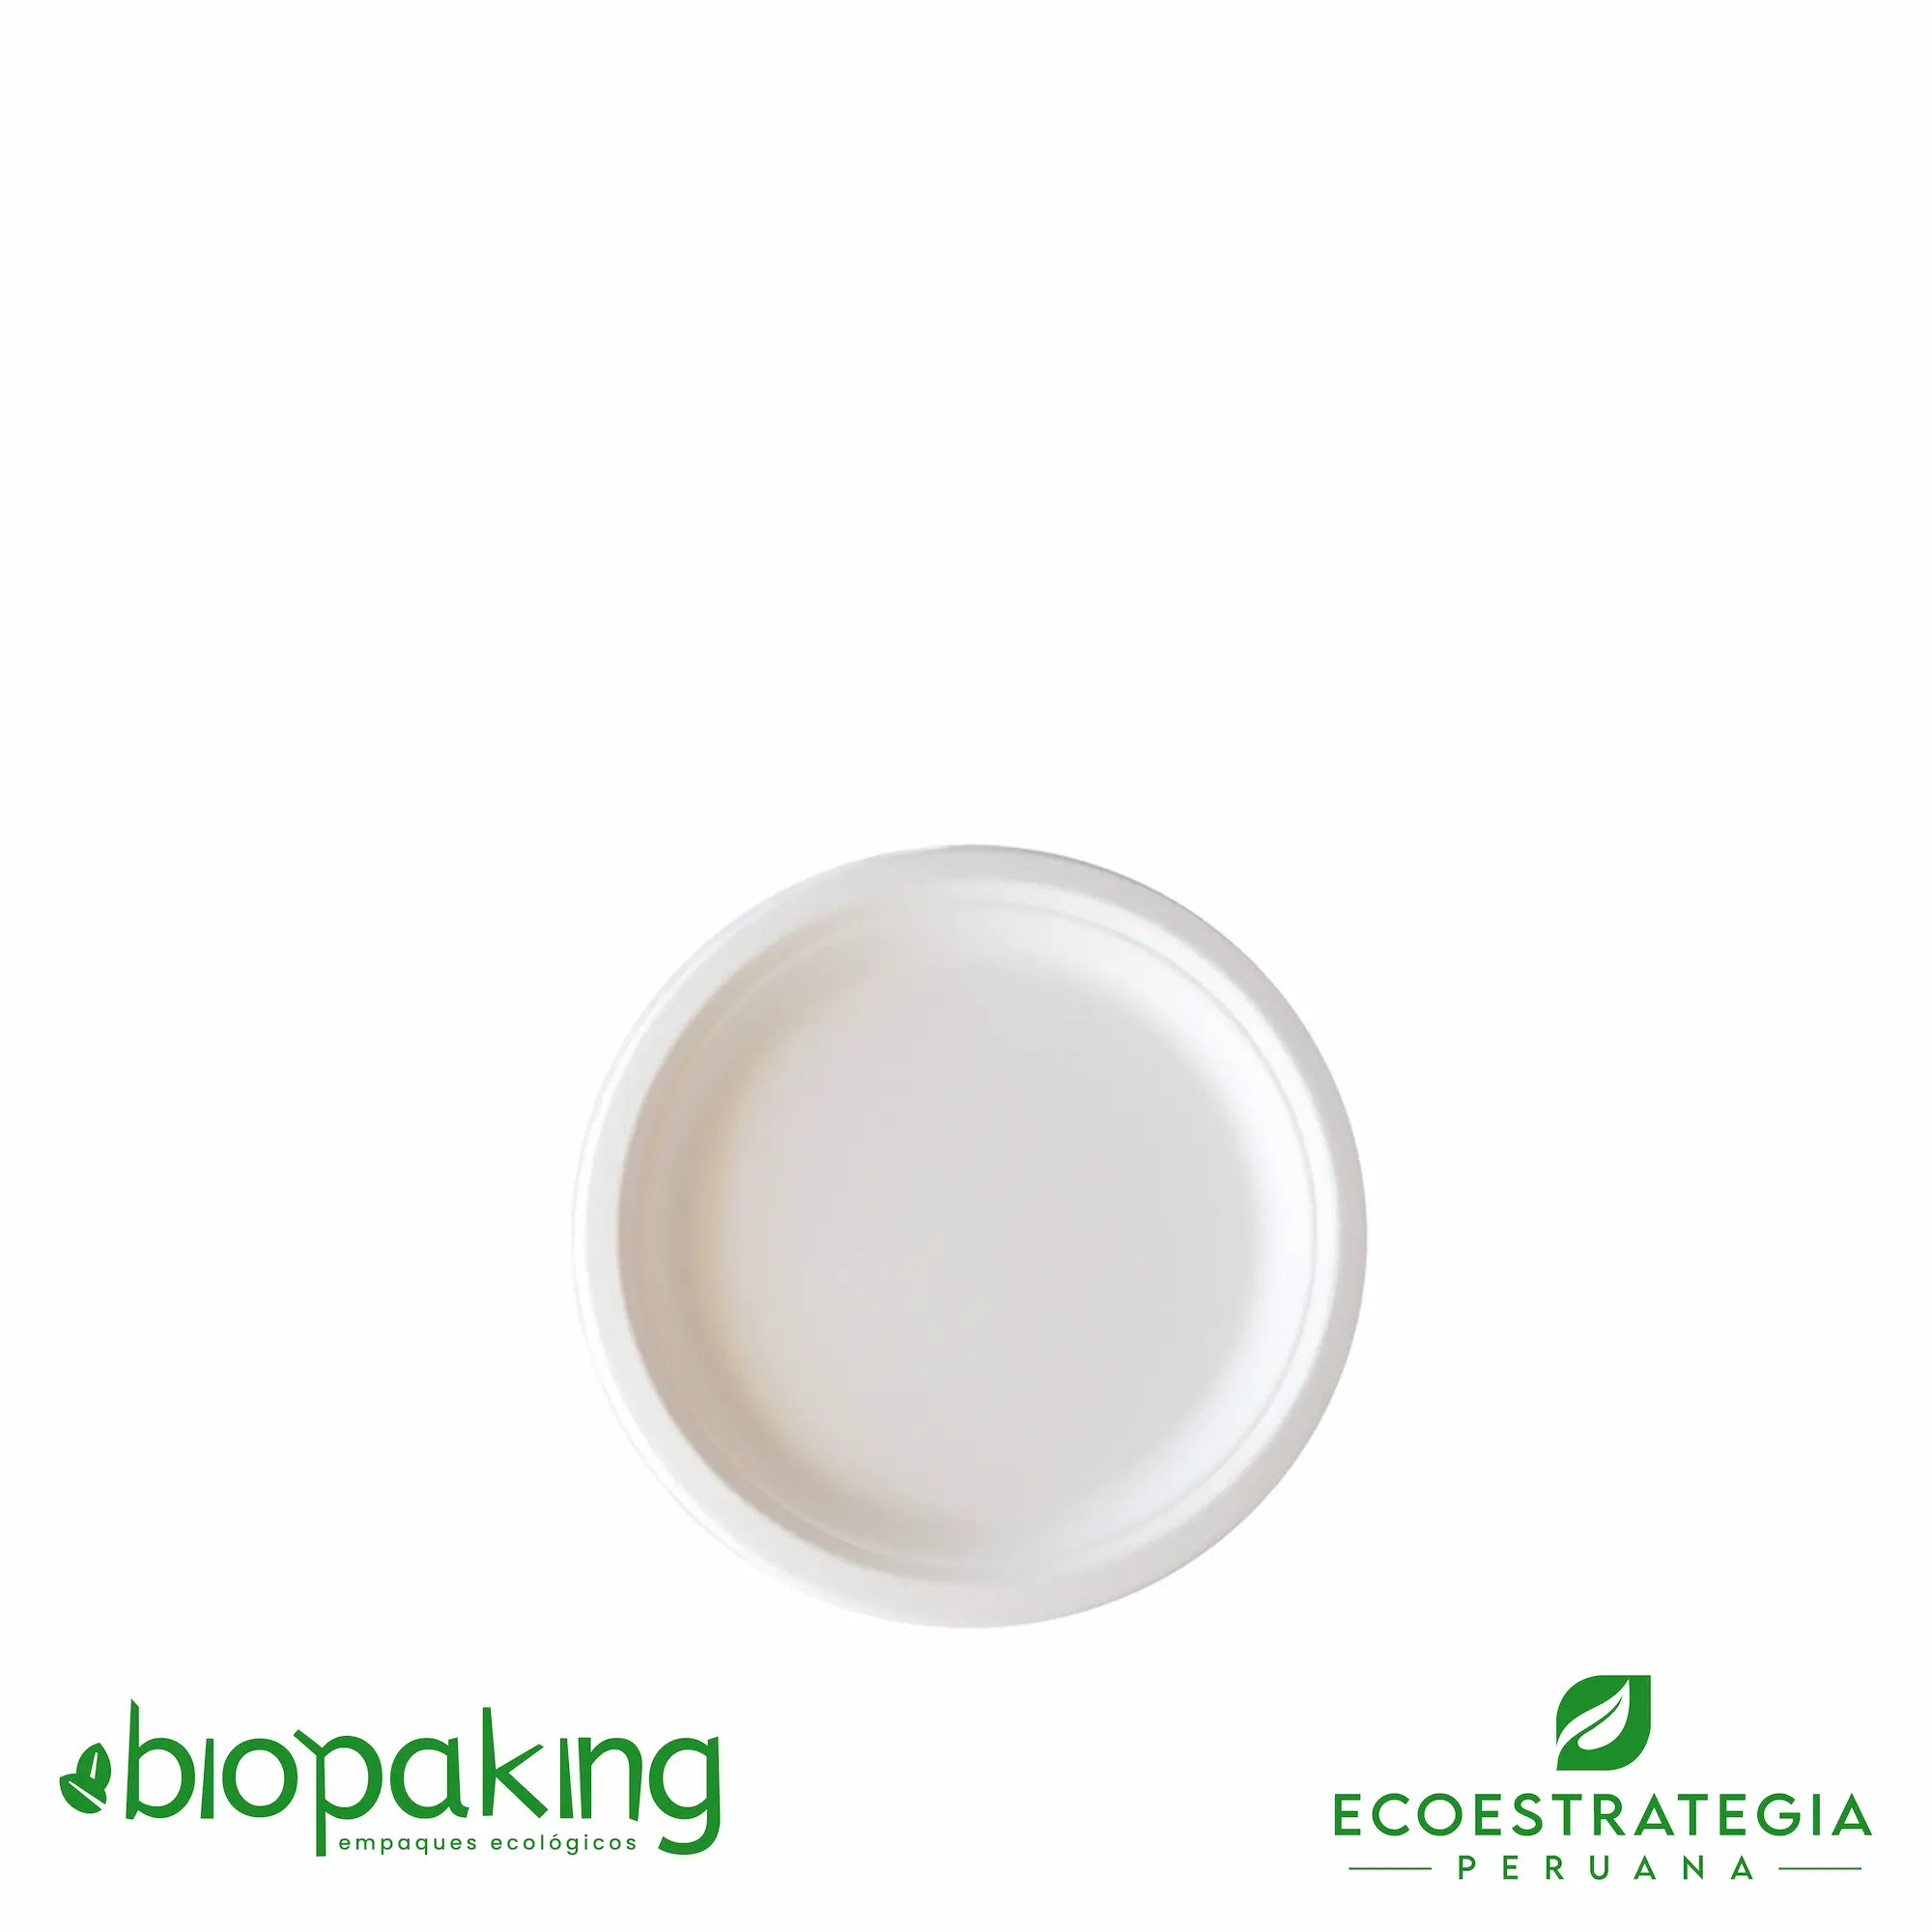 Este plato de 15cm, es un producto de materiales biodegradables, hecho a base de fibra de caña de azúcar. Cotiza envases, empaques y tapers para comidas